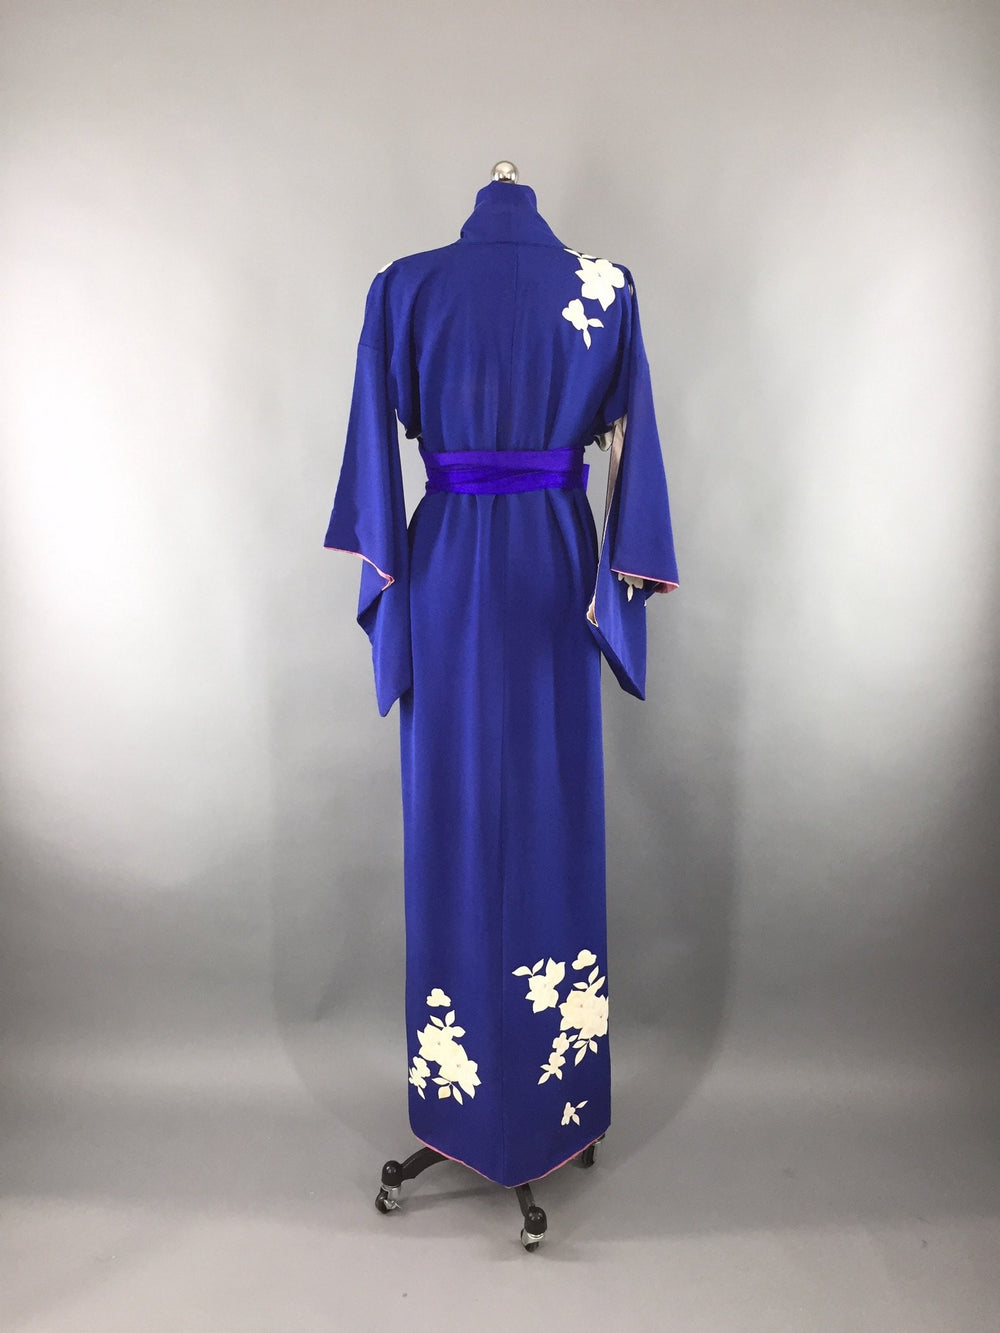 Vintage 1950s Kimono Robe / Royal Blue Floral Print